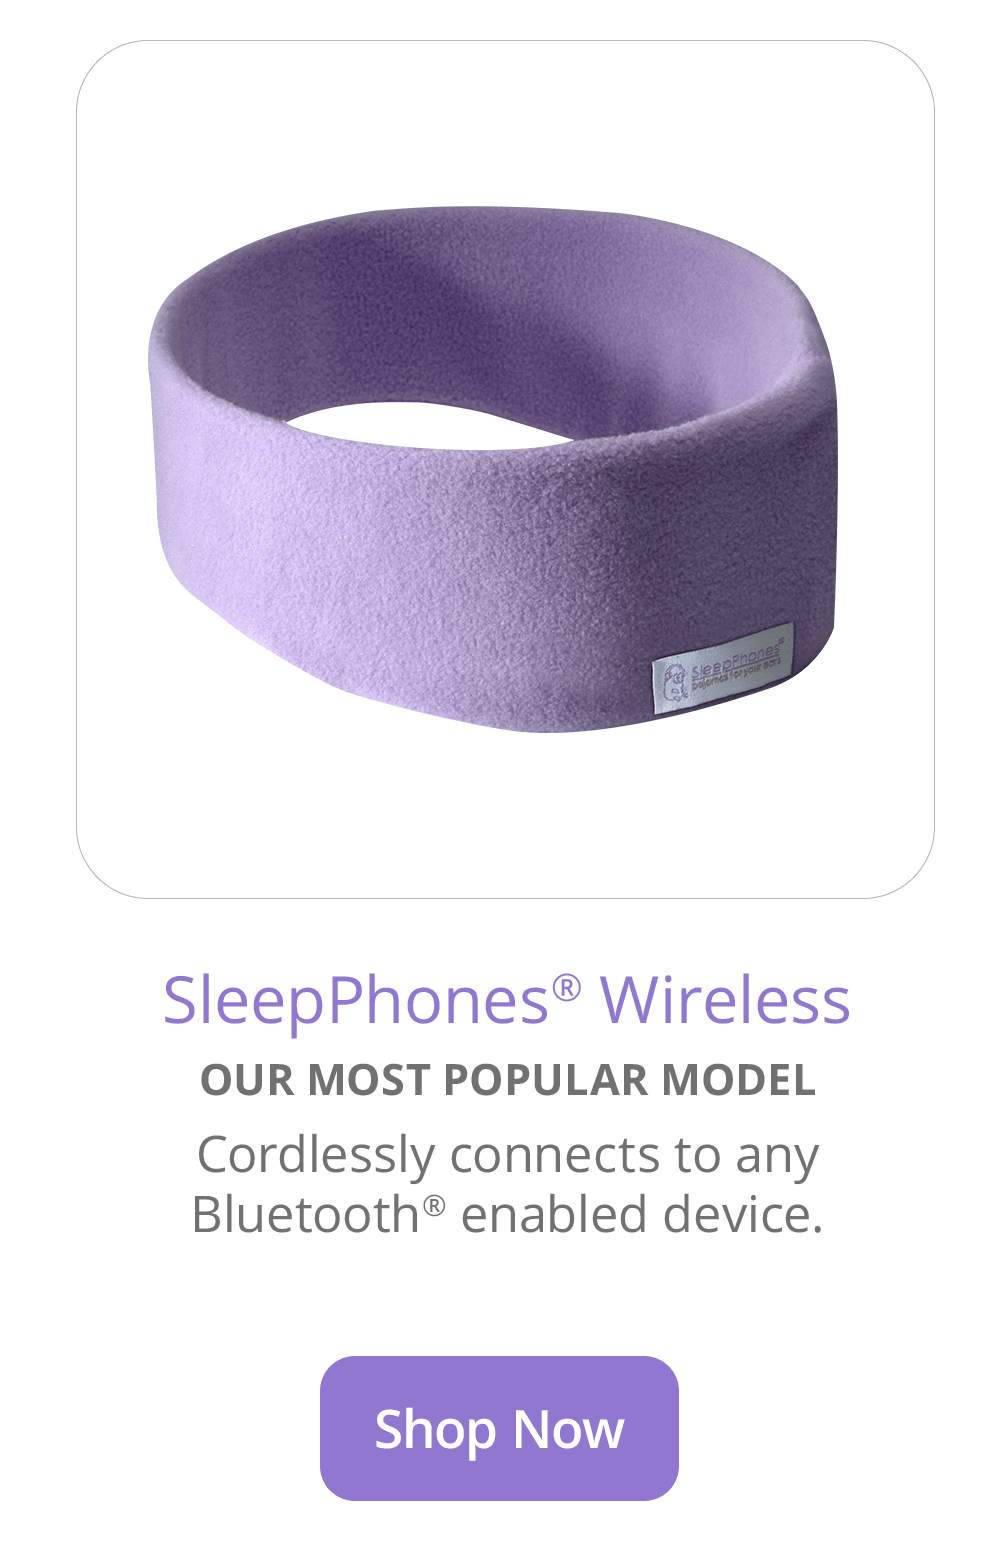 SleepPhones Wireless Sleep Headphones in Quiet Lavender Fleece